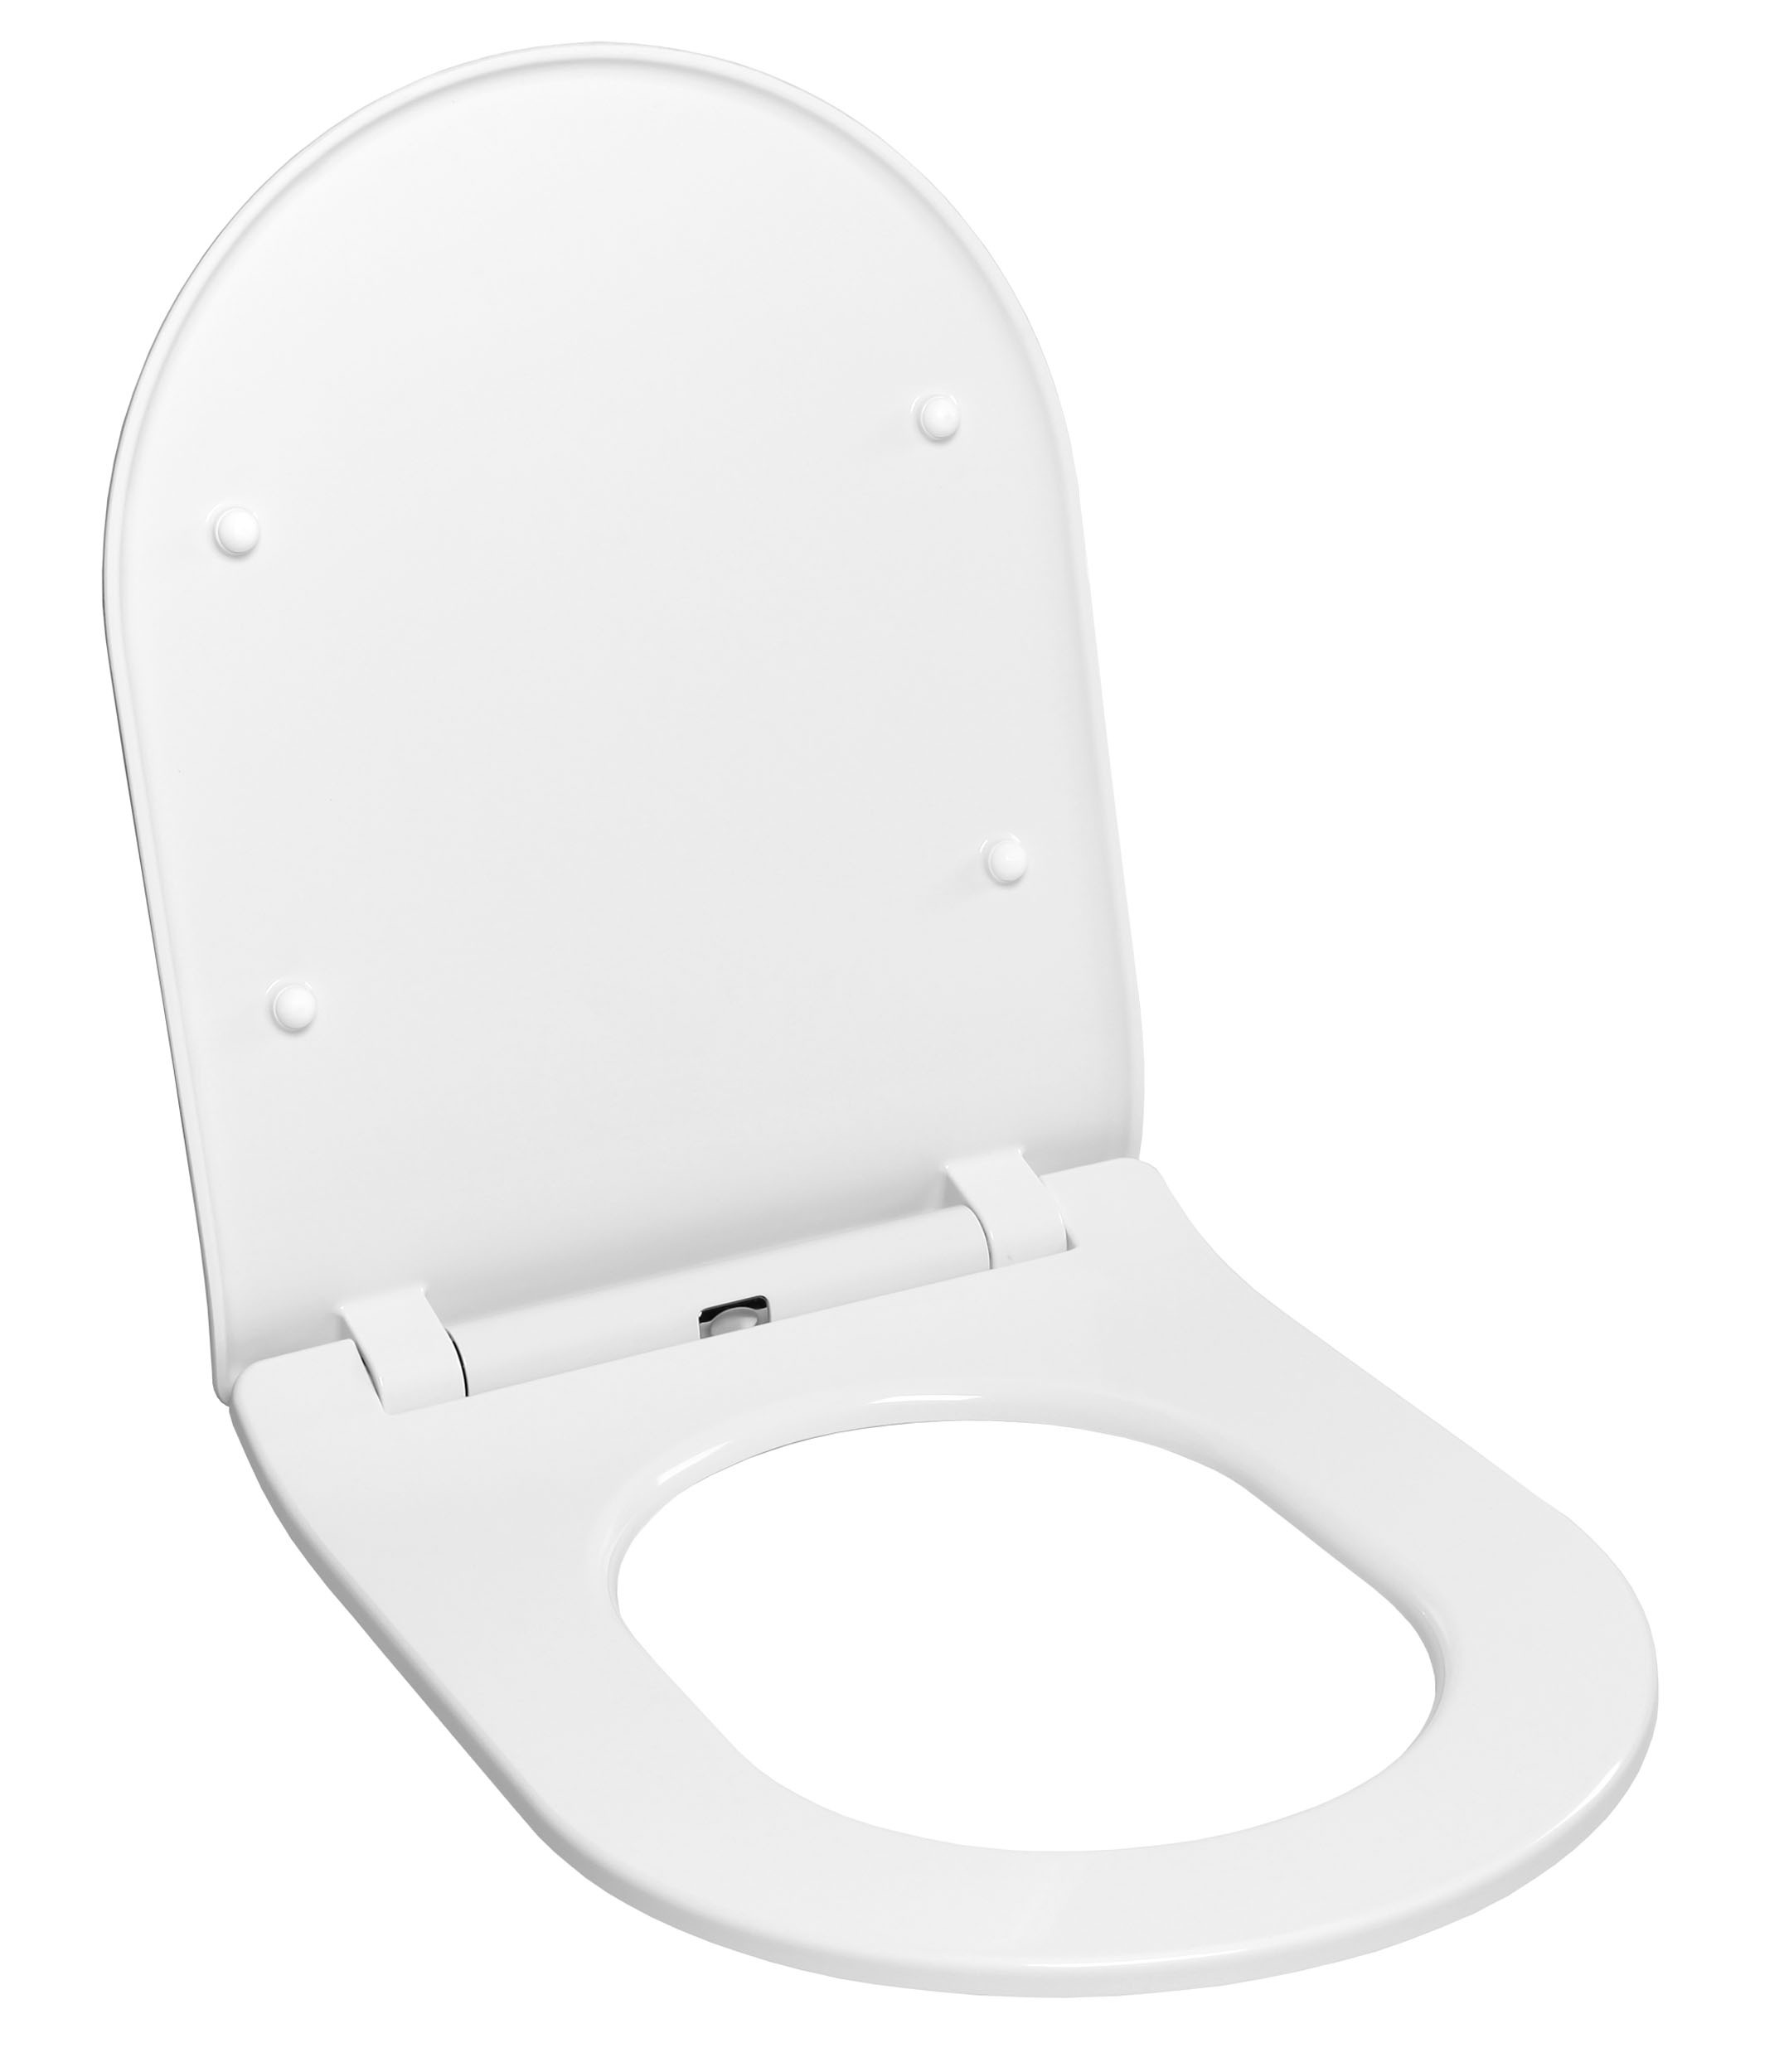 Forme U/V SièGe Toilette avec couvercle ultra résistant résistant au ralenti couvercle de siège de toilette épaissie couvercle utilisation de la famille 